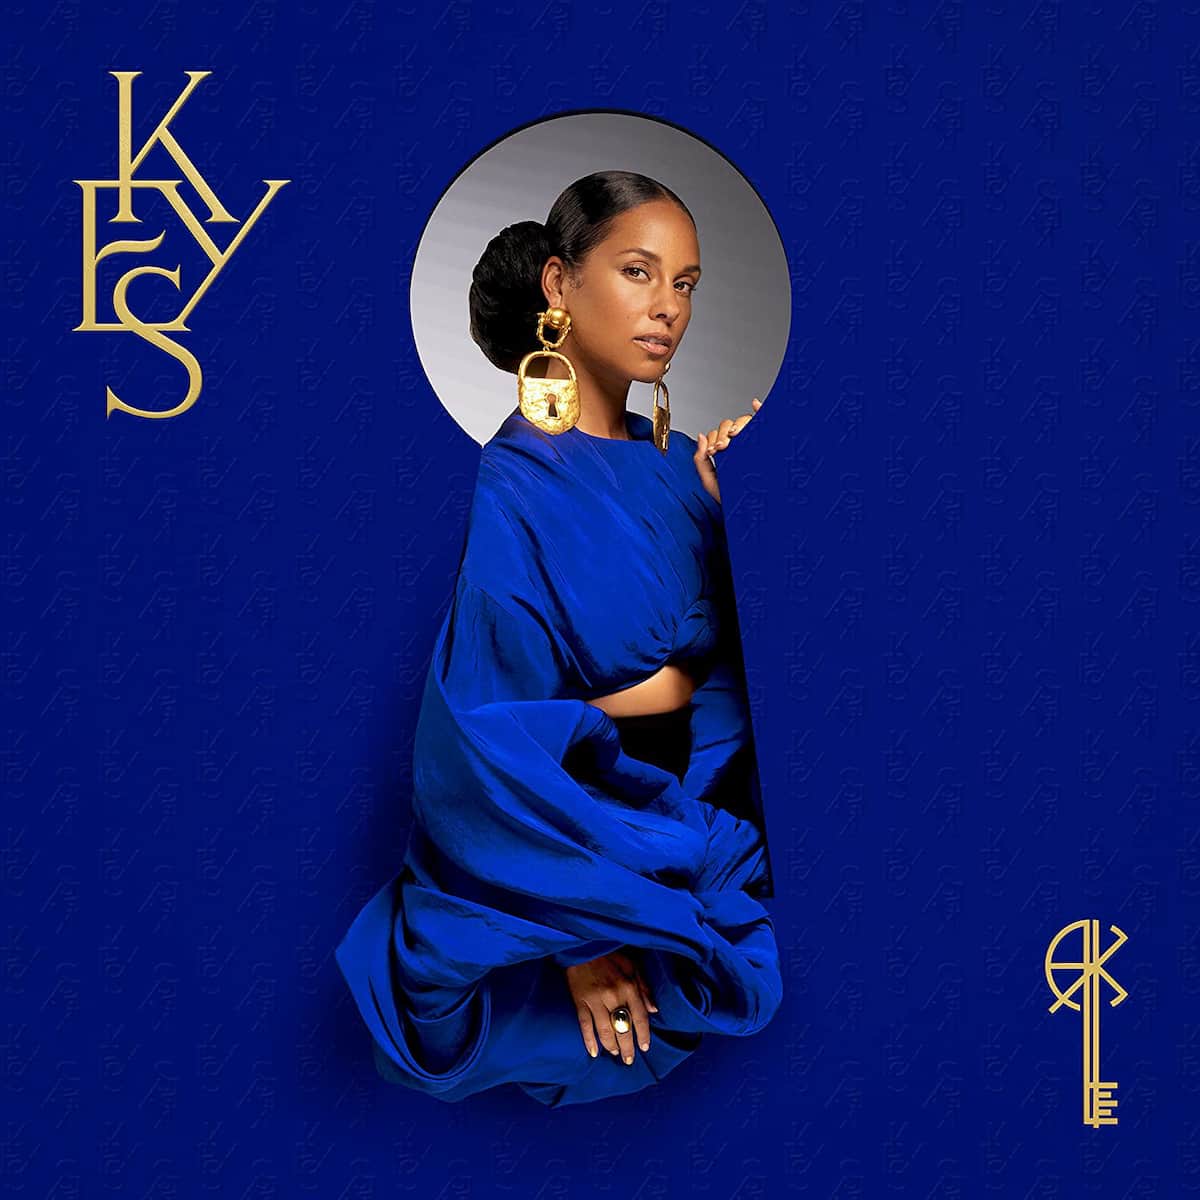 Alicia Keys Konzerte 2022 in Deutschland - hier im Bild das Cover ihres aktuellen Albums "Keys"